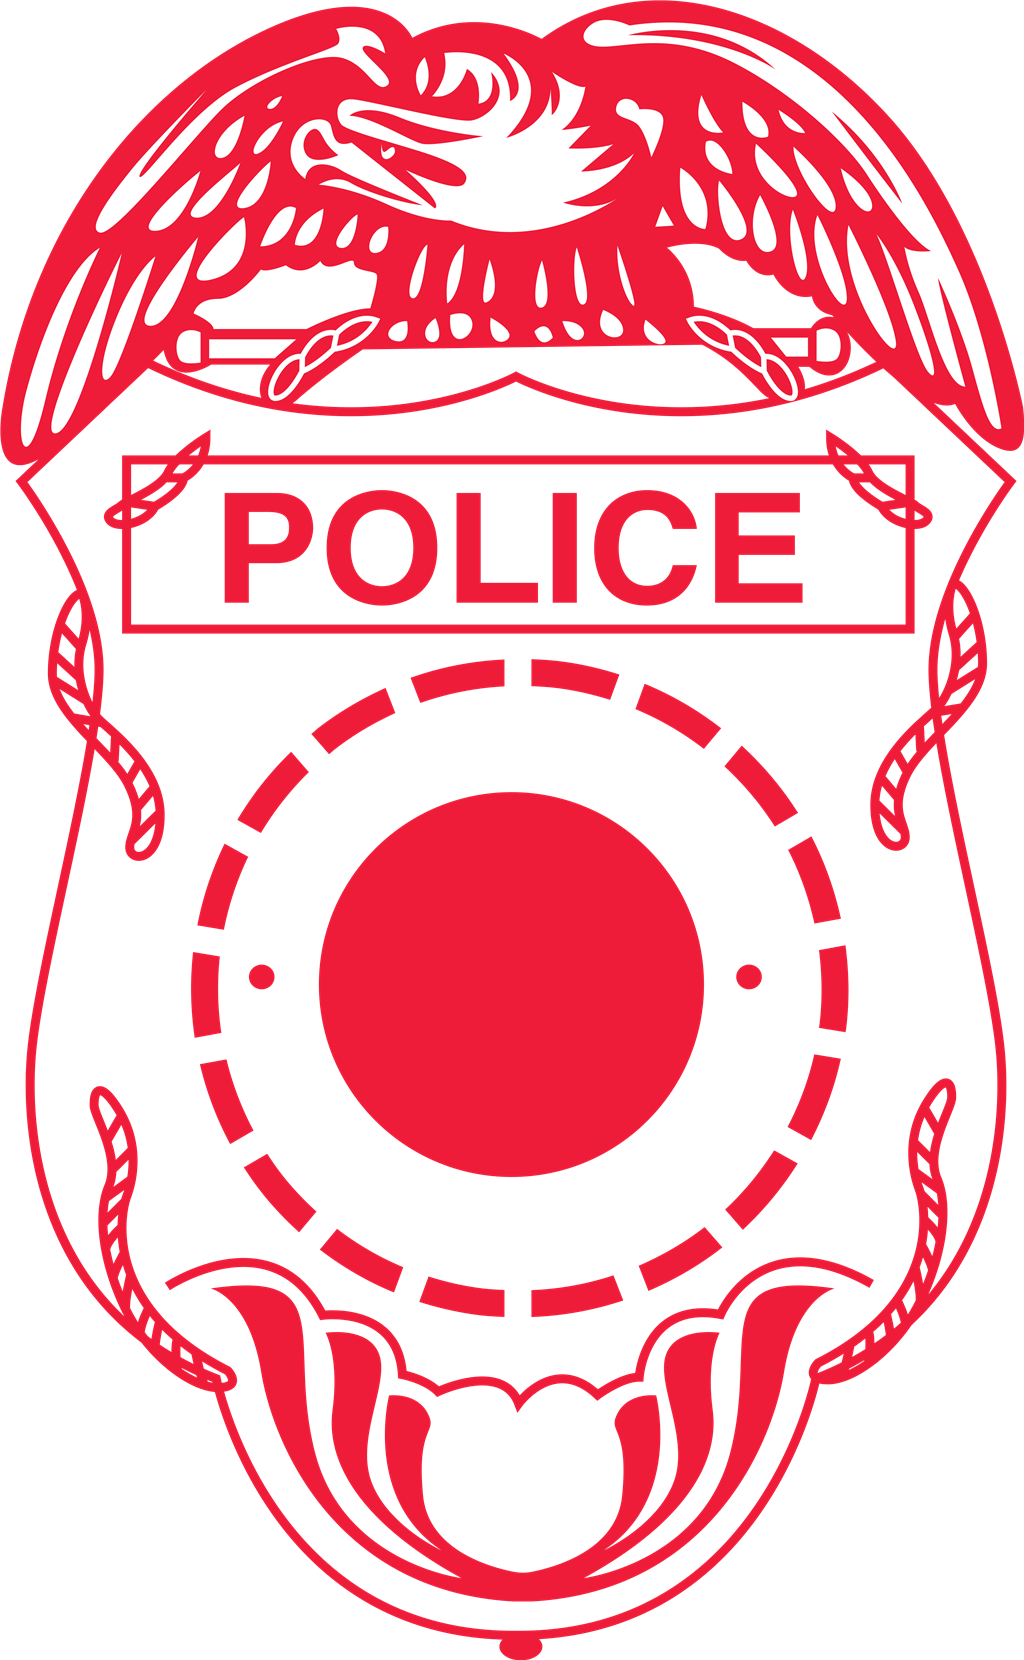 Police logotype, transparent .png, medium, large